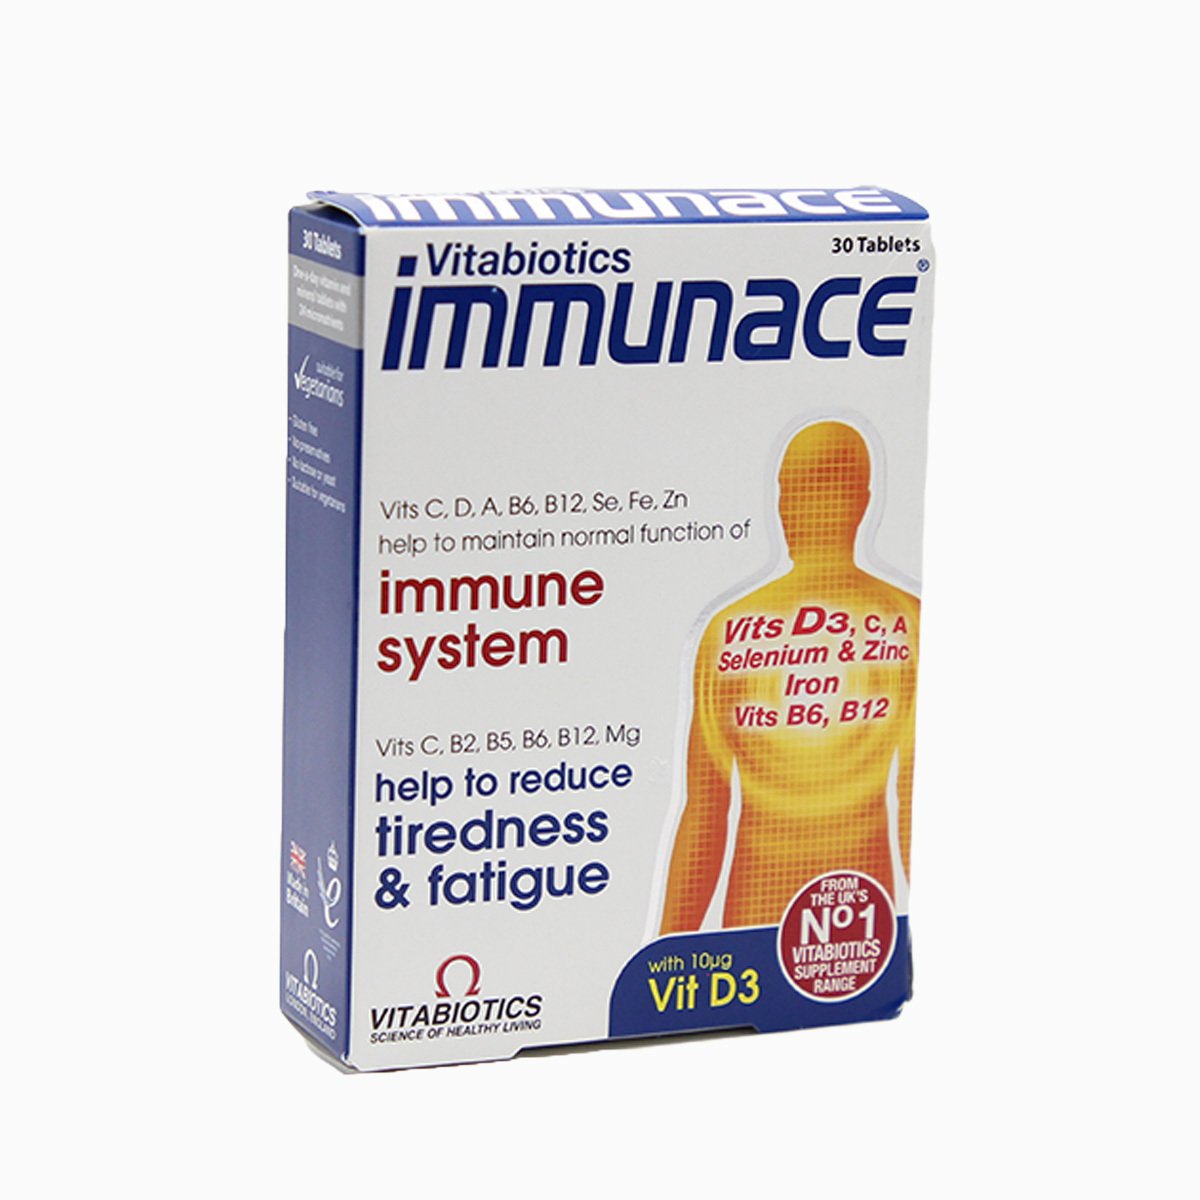 Immunace (30 Tablet)